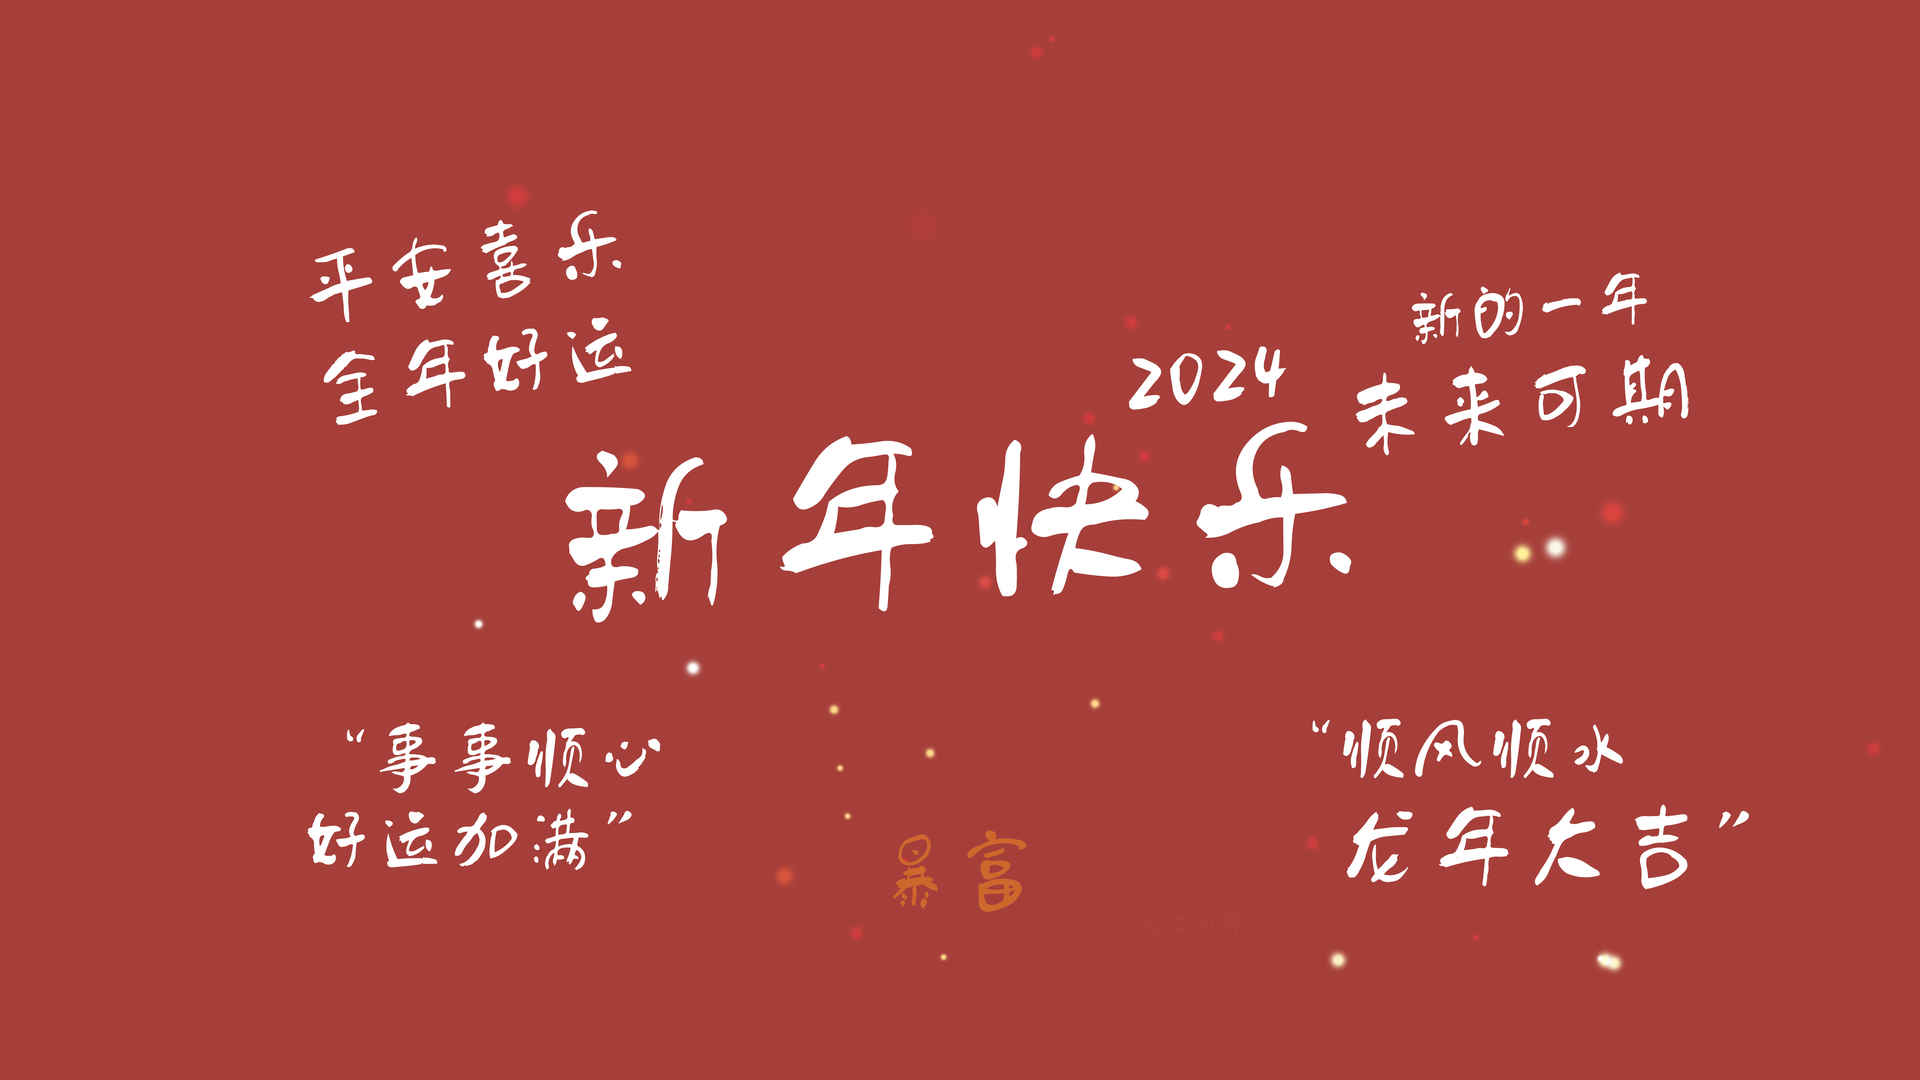 原创 2024新年快乐 新的一年 未来可期 平安喜乐 全年好运 8K高清壁纸